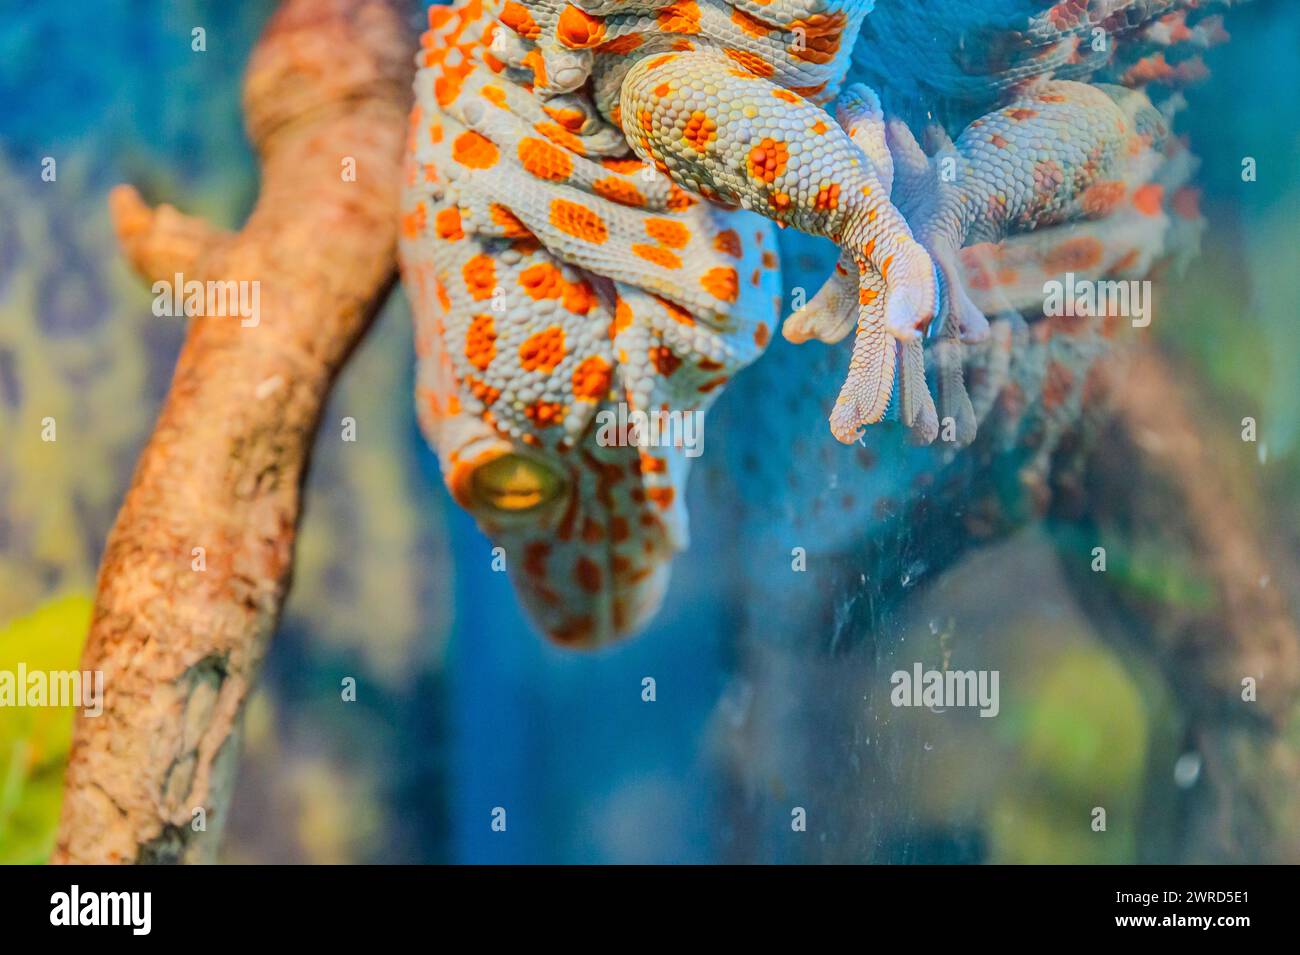 gecko hängt kopfüber an einem Draht. Geckos verfügen über spezielle Zehenpolster, mit denen sie klettern können und sich an glatten Oberflächen haften lassen, einschließlich hängend Stockfoto